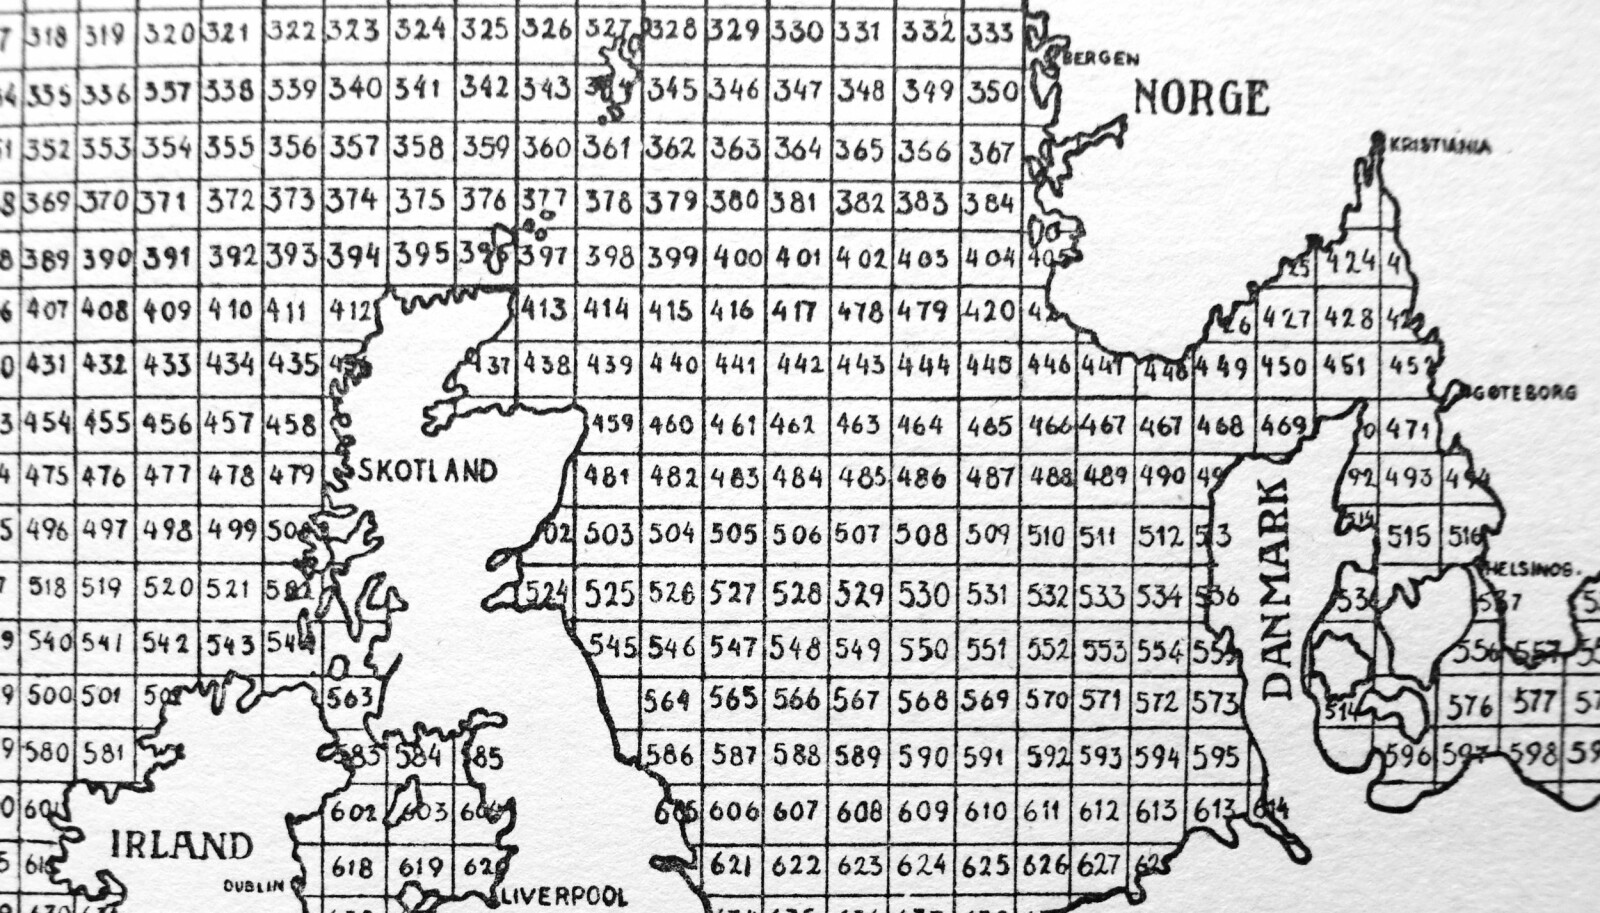 <b>S</b>pionenes kodekart. Med stedsangivelser til sjøs oppgitt i tallkoder. Det gjorde det lettere for ubåtene å senke skipene.